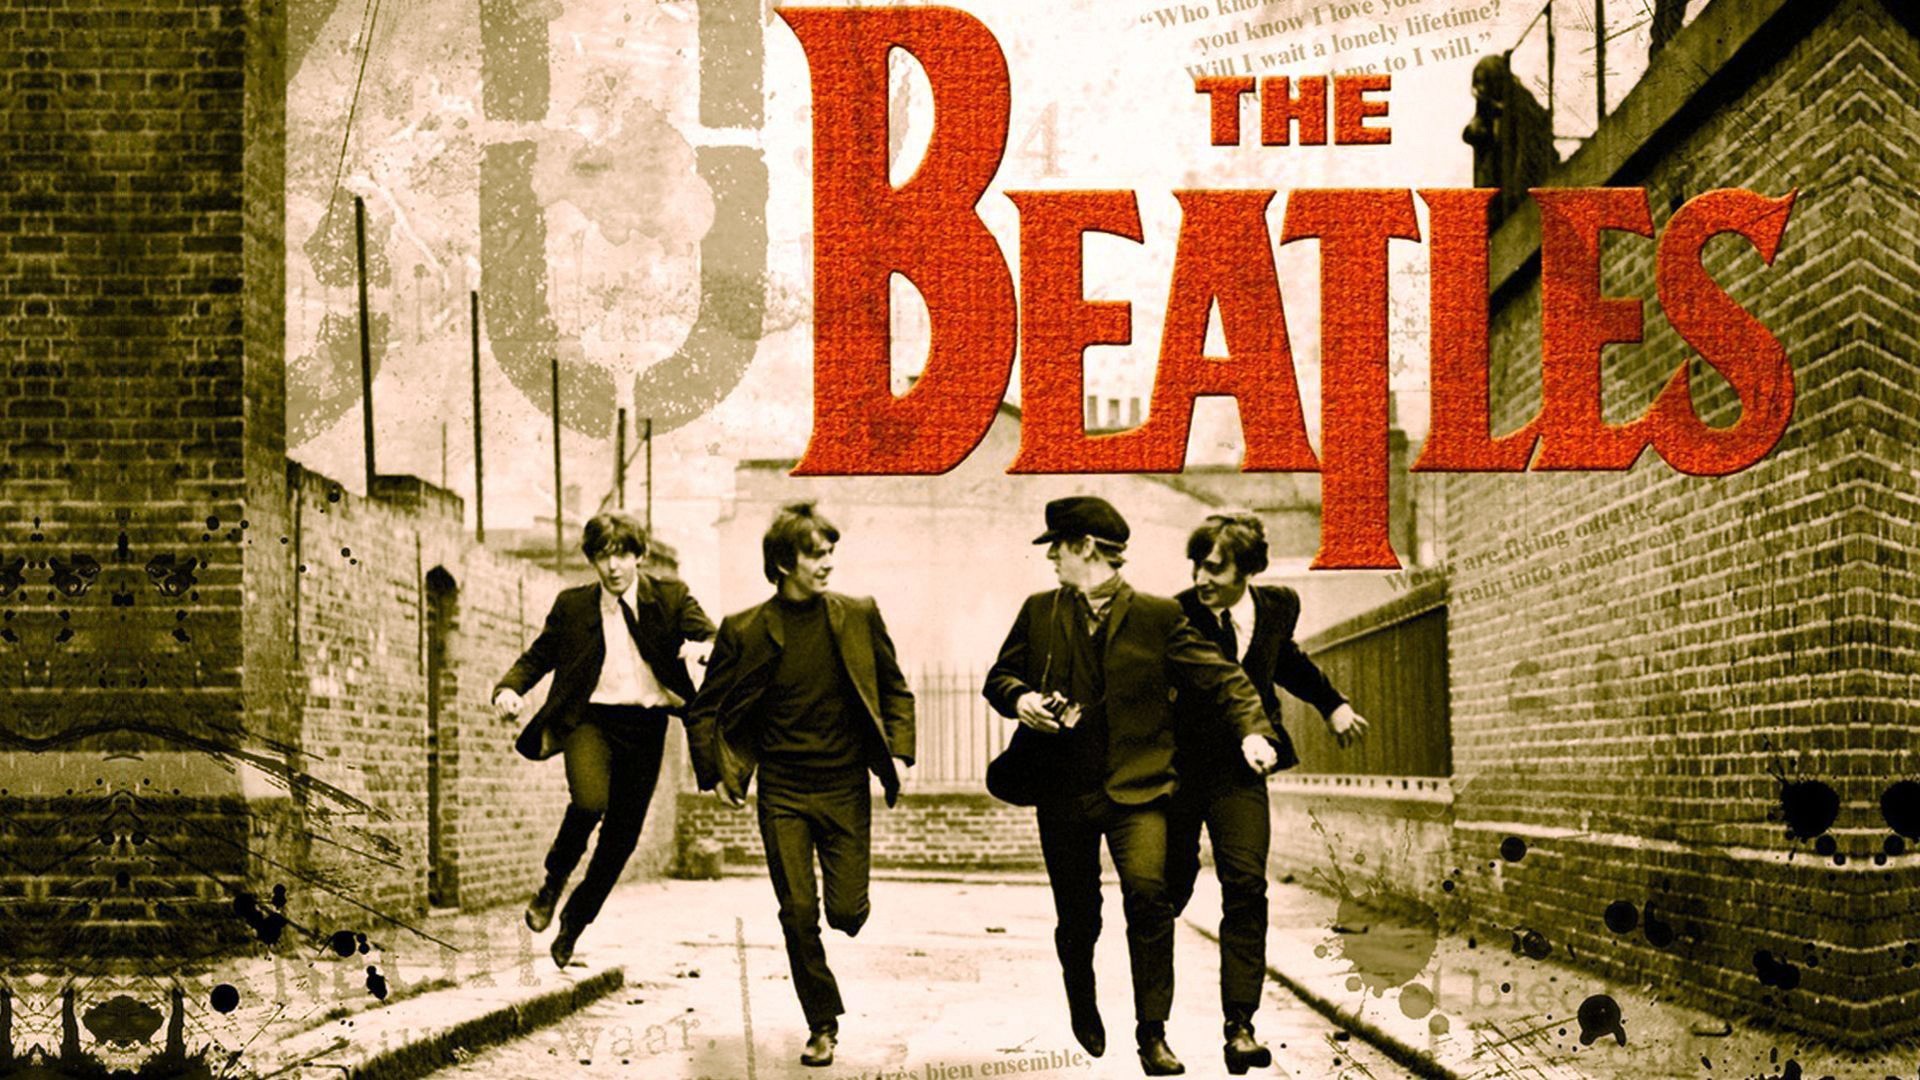 1920x1080 Music groups The Beatles musicians pop band Rock Band wallpaper |   | 226057 | WallpaperUP